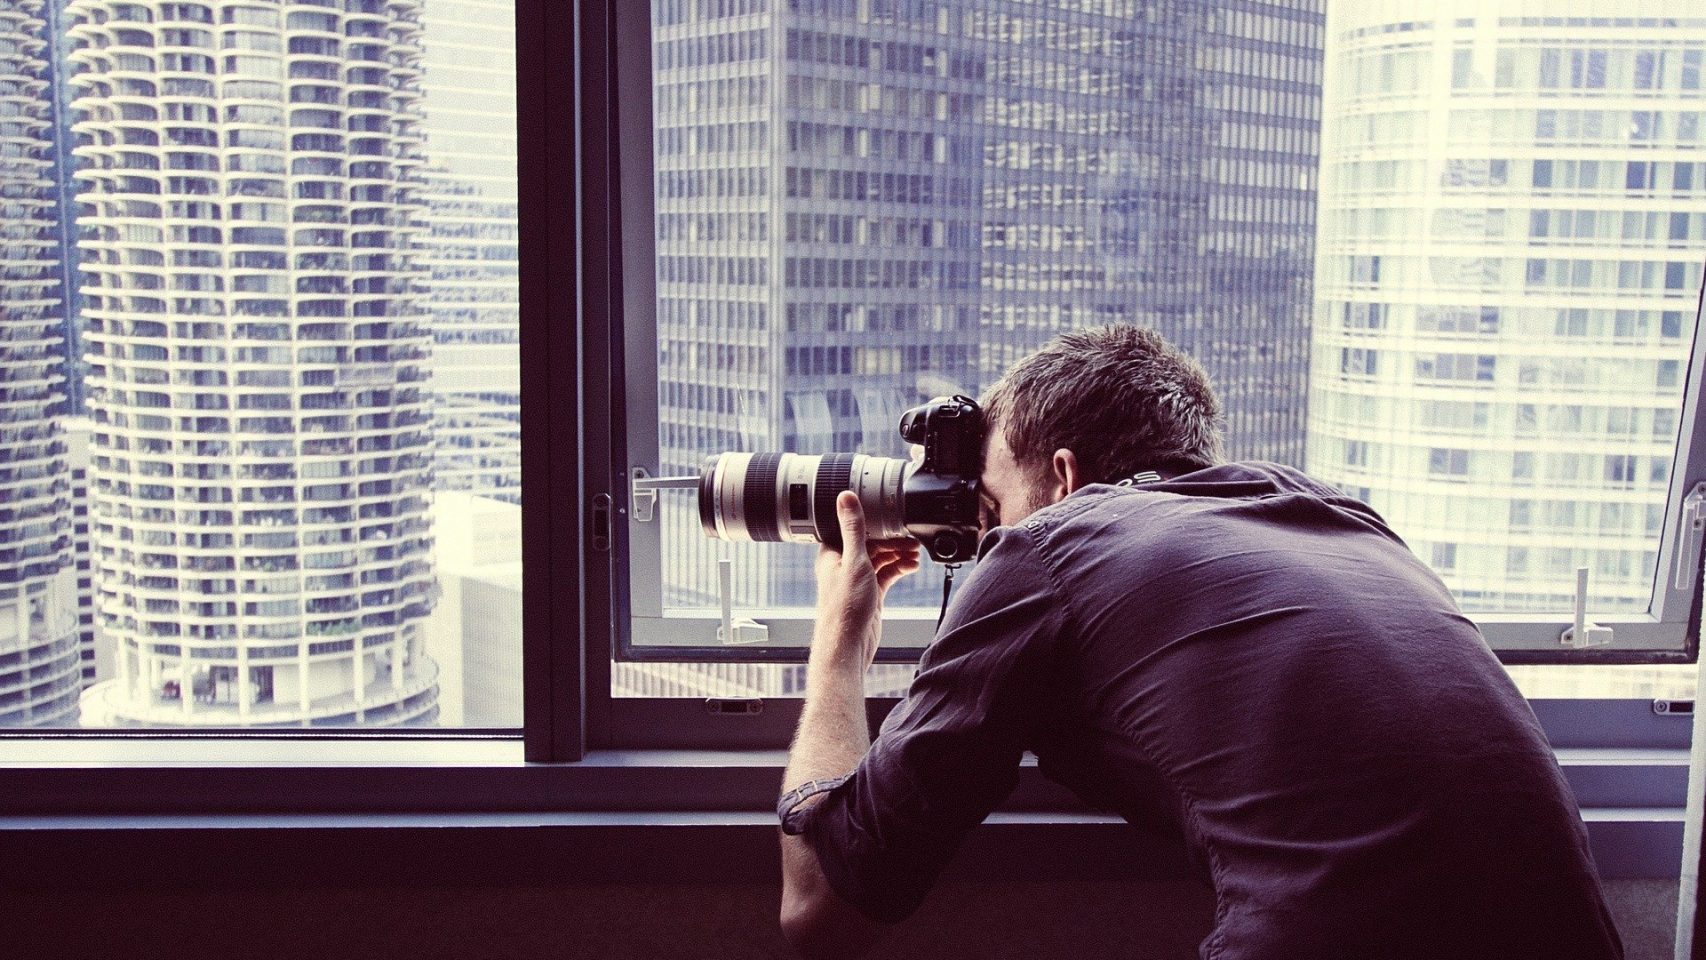 Concurso de fotografía desde los balcones, iniciativa de PhotoEspaña.